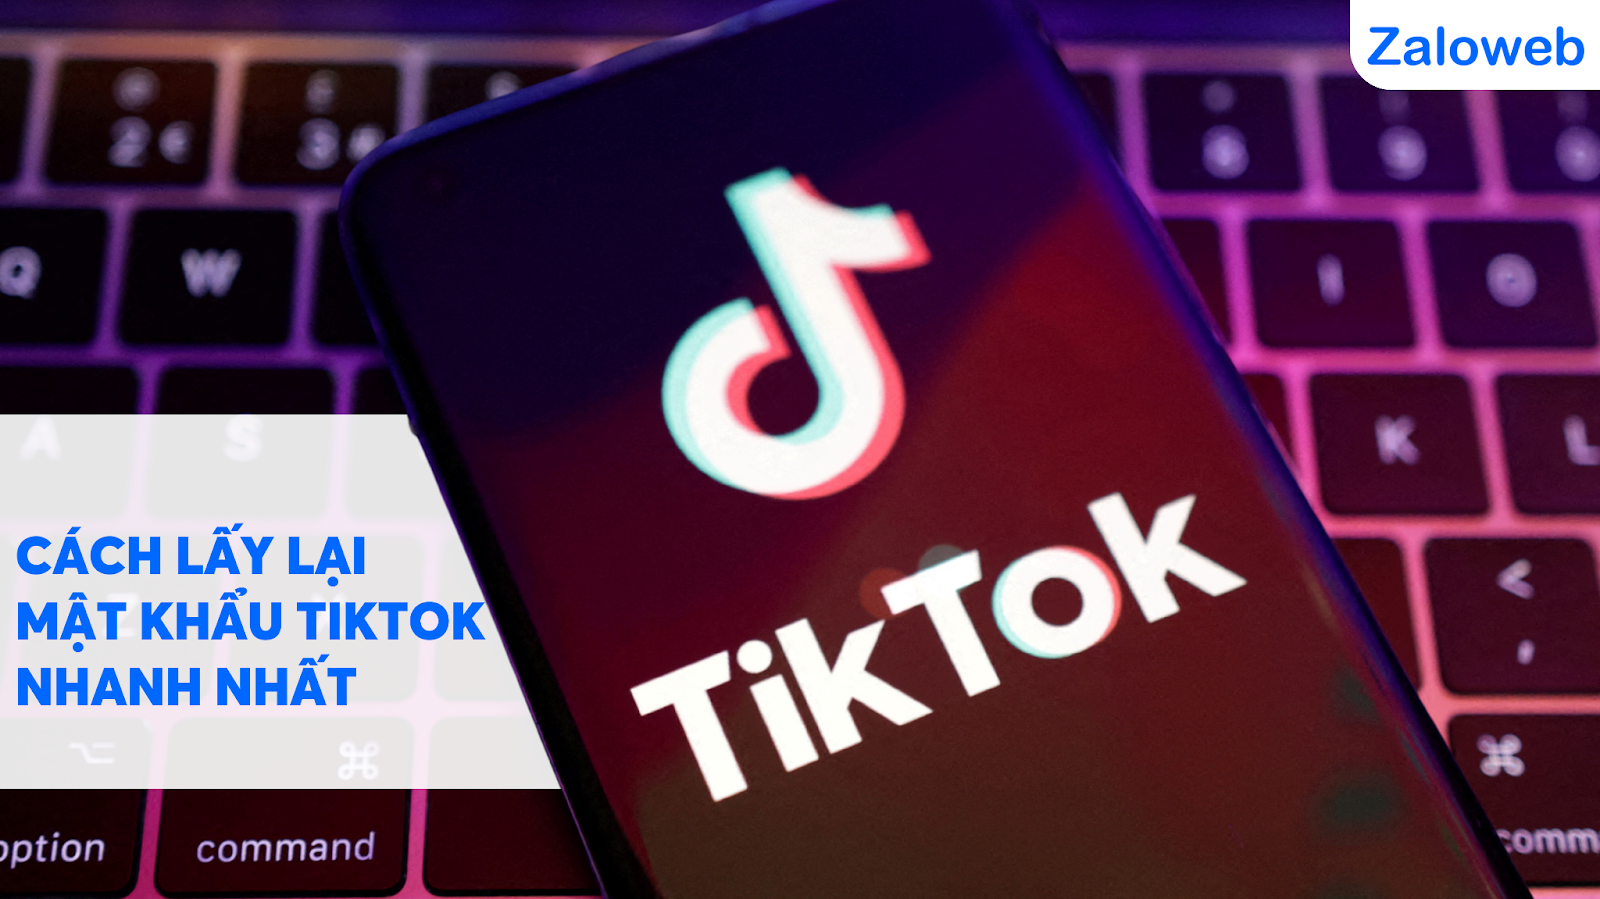 “Cách lấy lại mật khẩu Tik Tok” là một thuật ngữ mà người dùng thường xuyên tìm kiếm